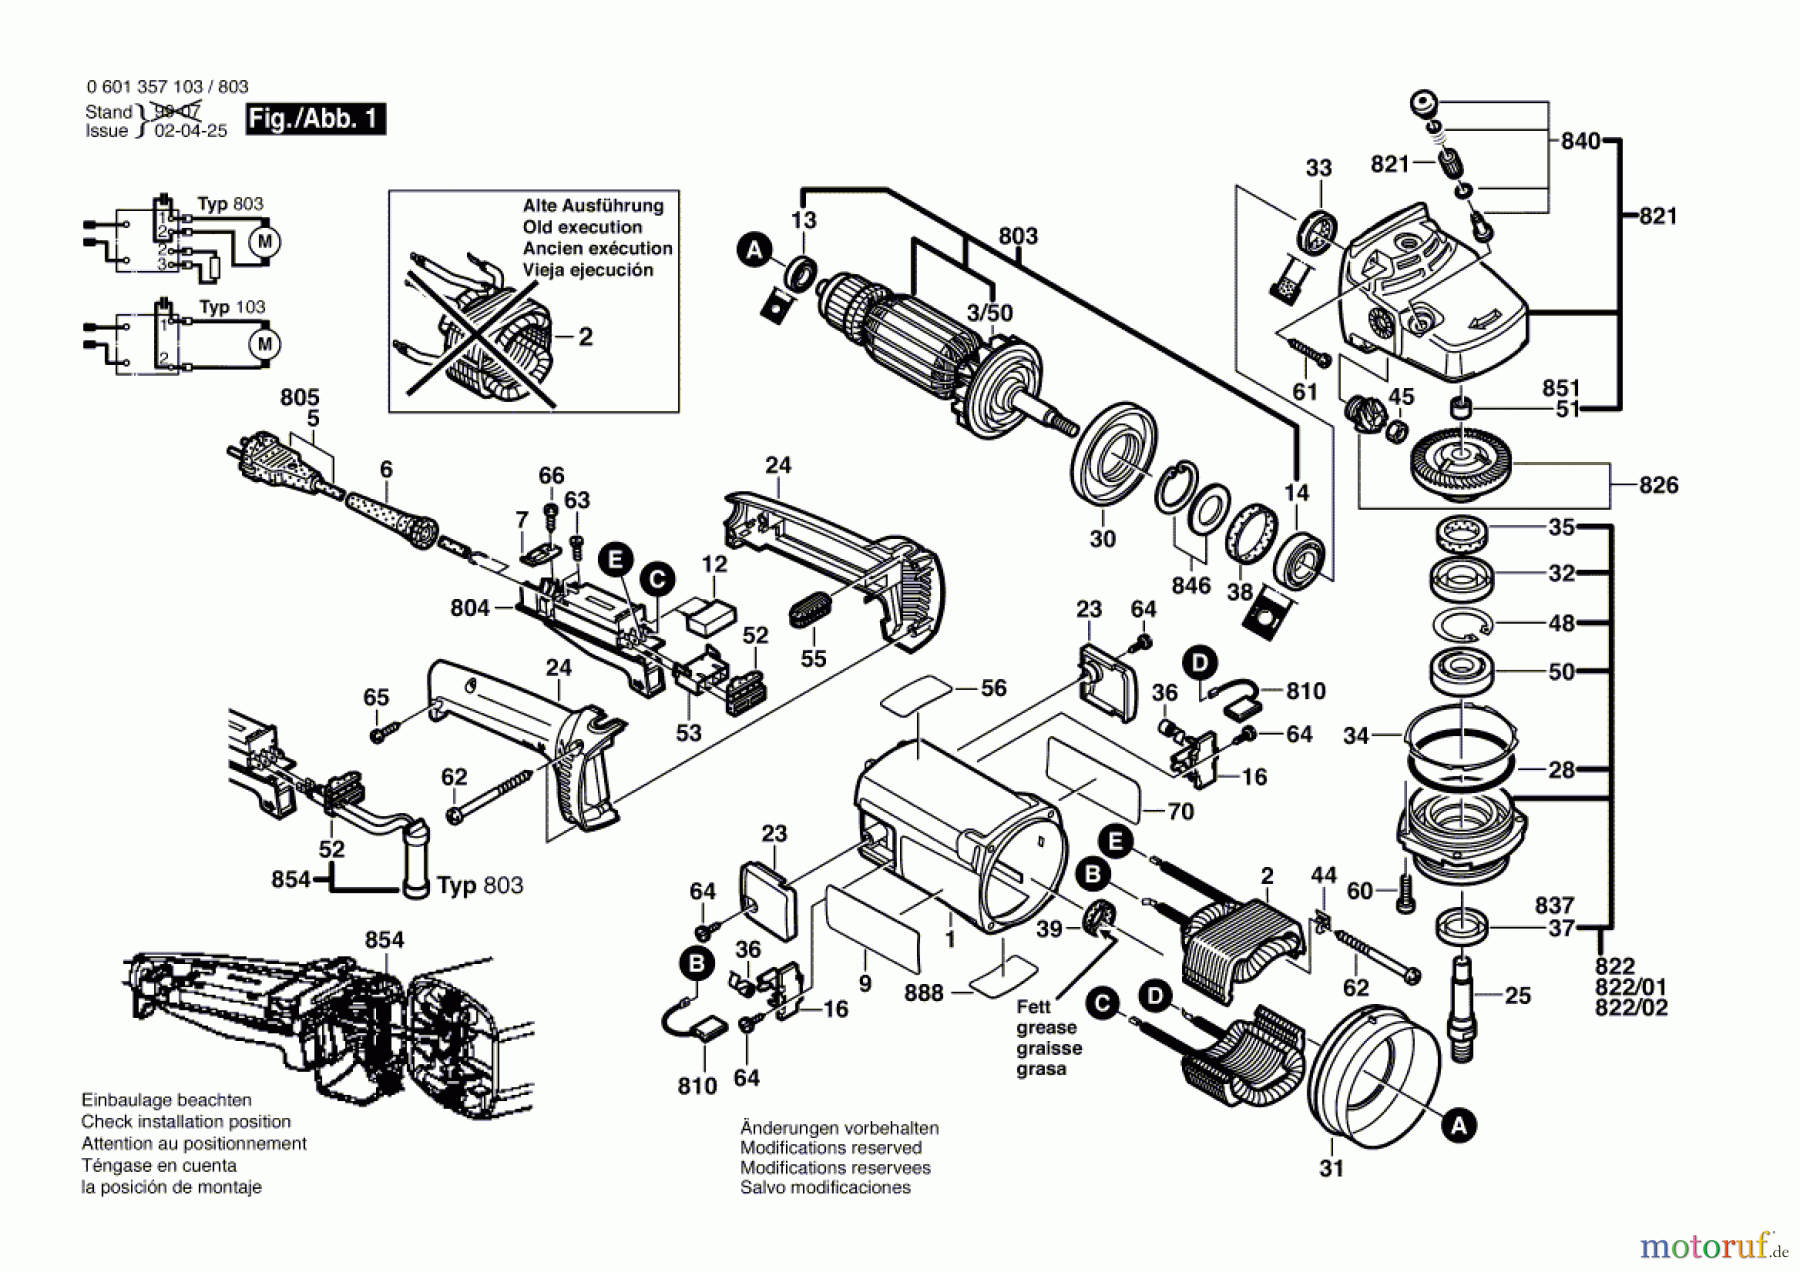  Bosch Werkzeug Winkelschleifer GWS 21-230 Seite 1